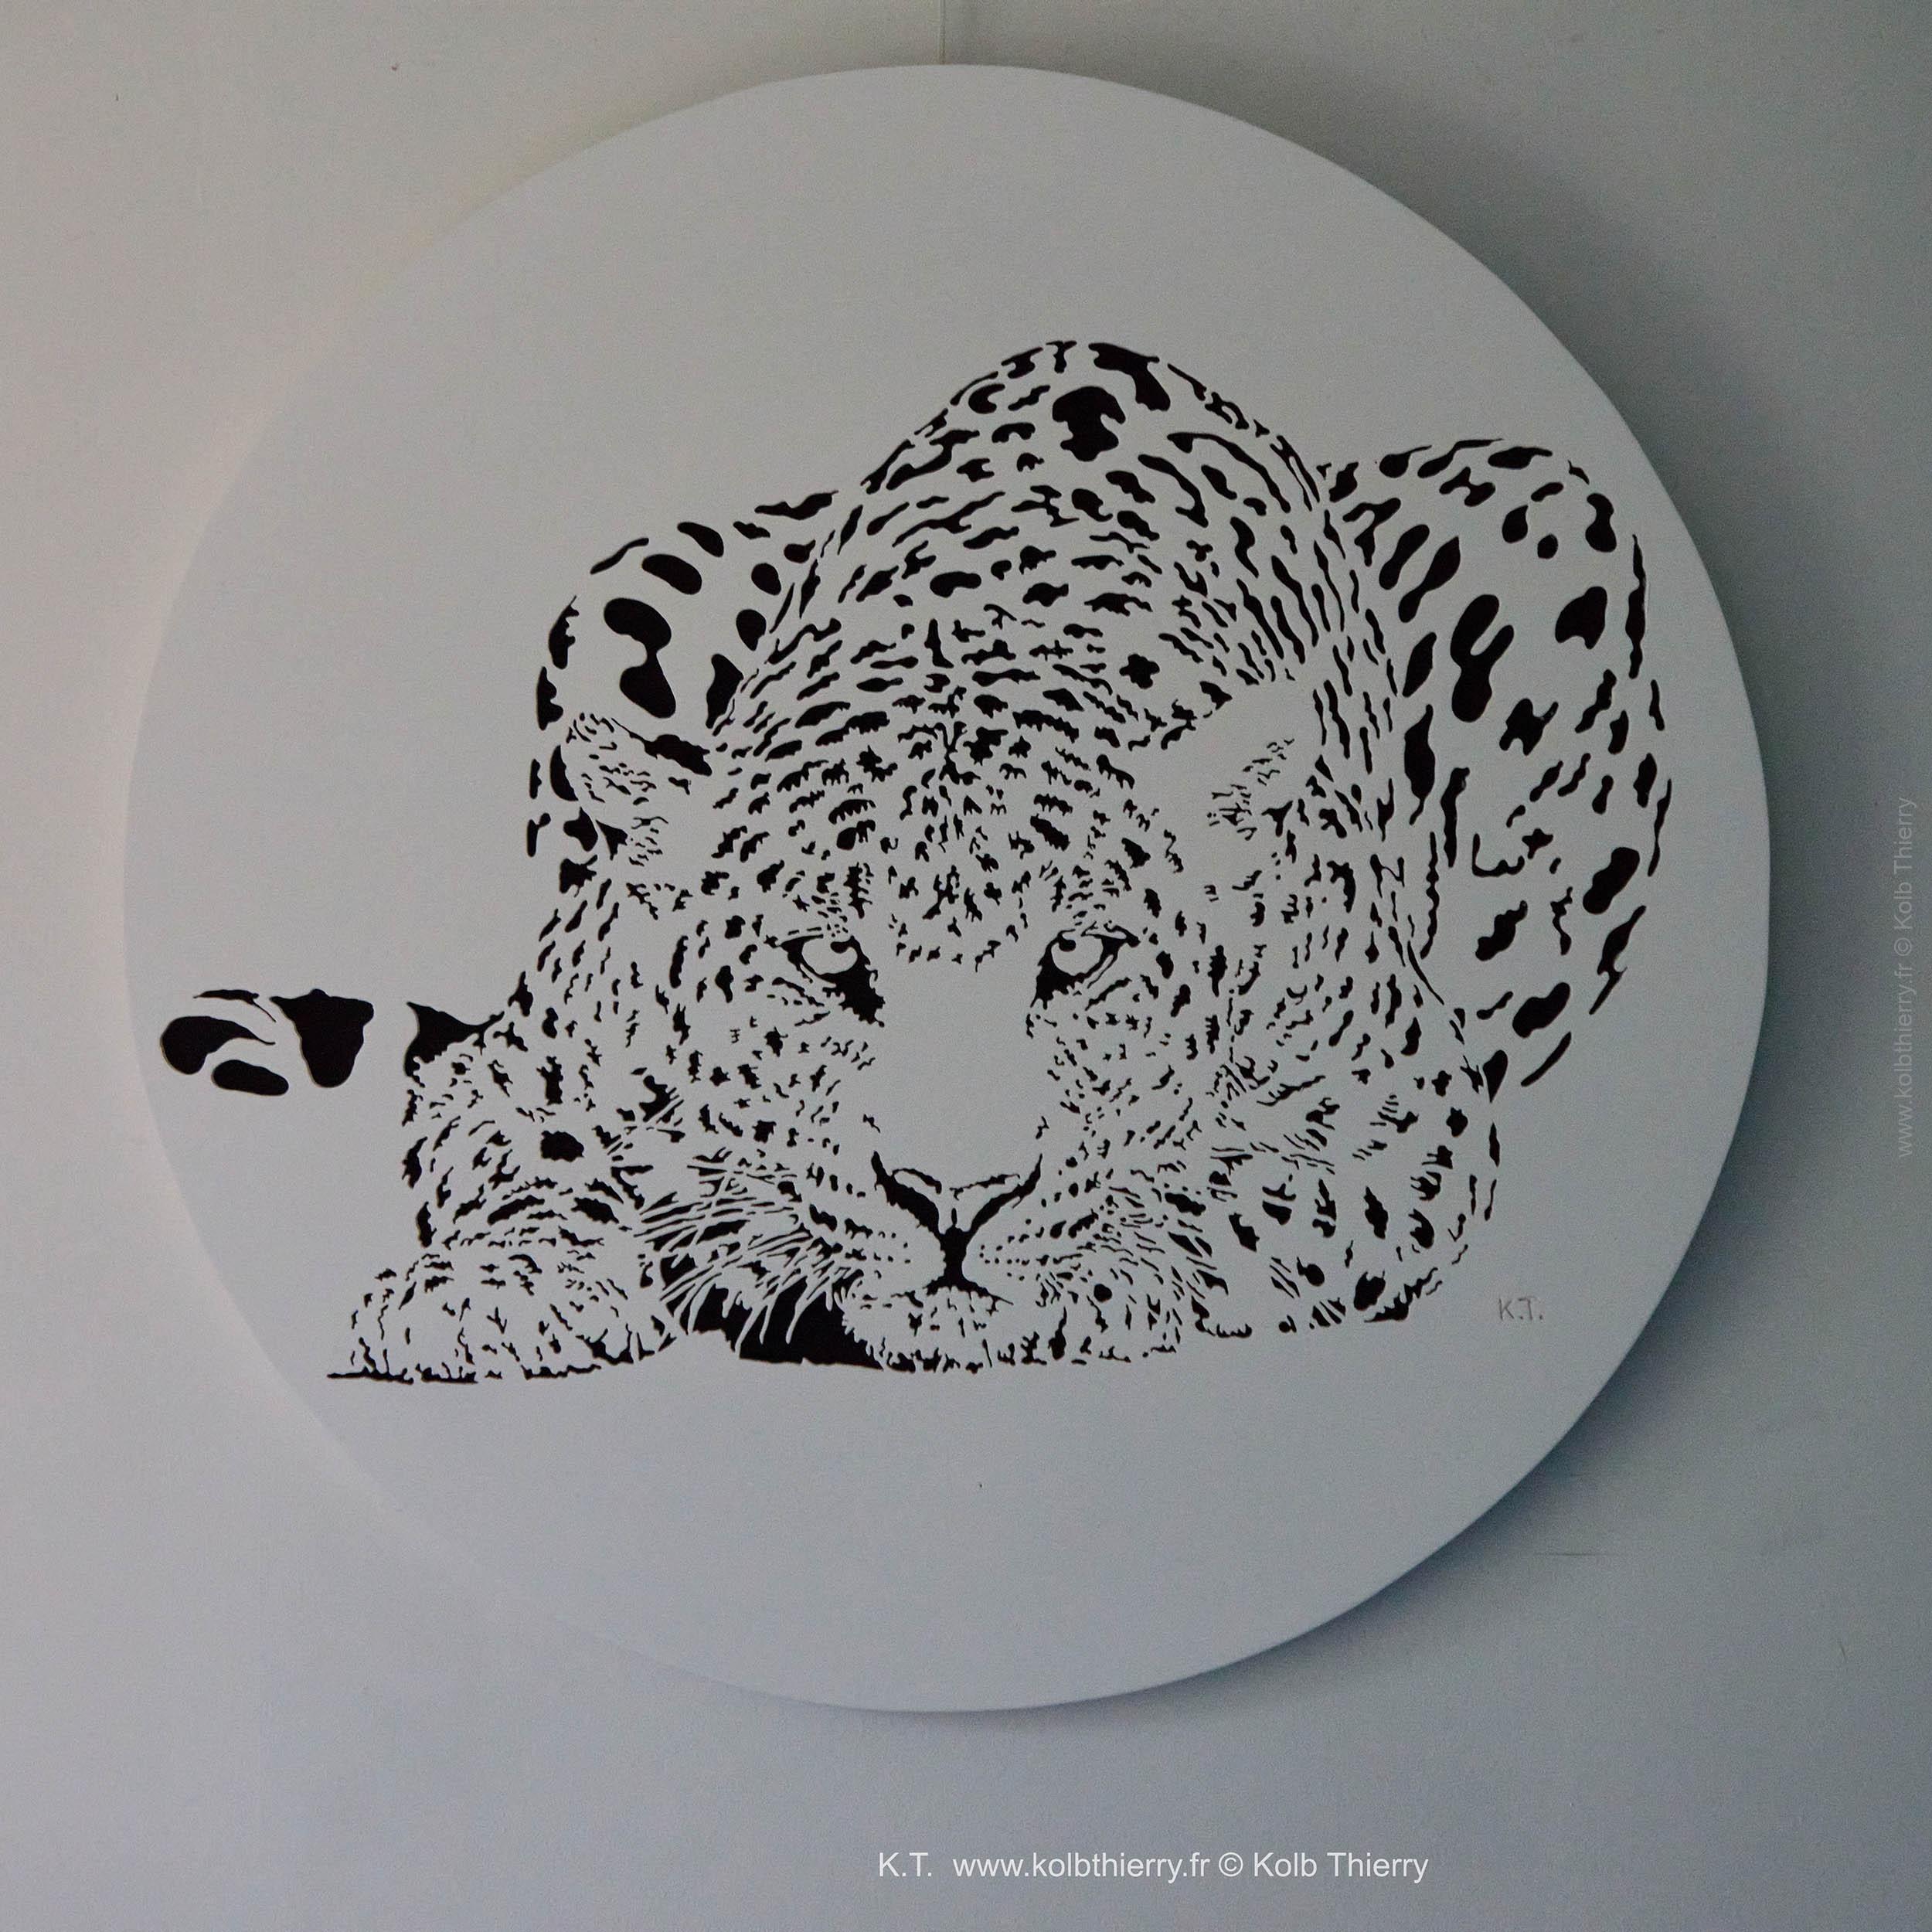 Thierry Kolb, sculpteur sur bois découpé, propose ici un Tondo de son merveilleux leopard à l'affut. Cette oeuvre est d'un format d'un diamètre de 103 cm. finition laquée mate blanche, posée sur un fond laque mate noire.